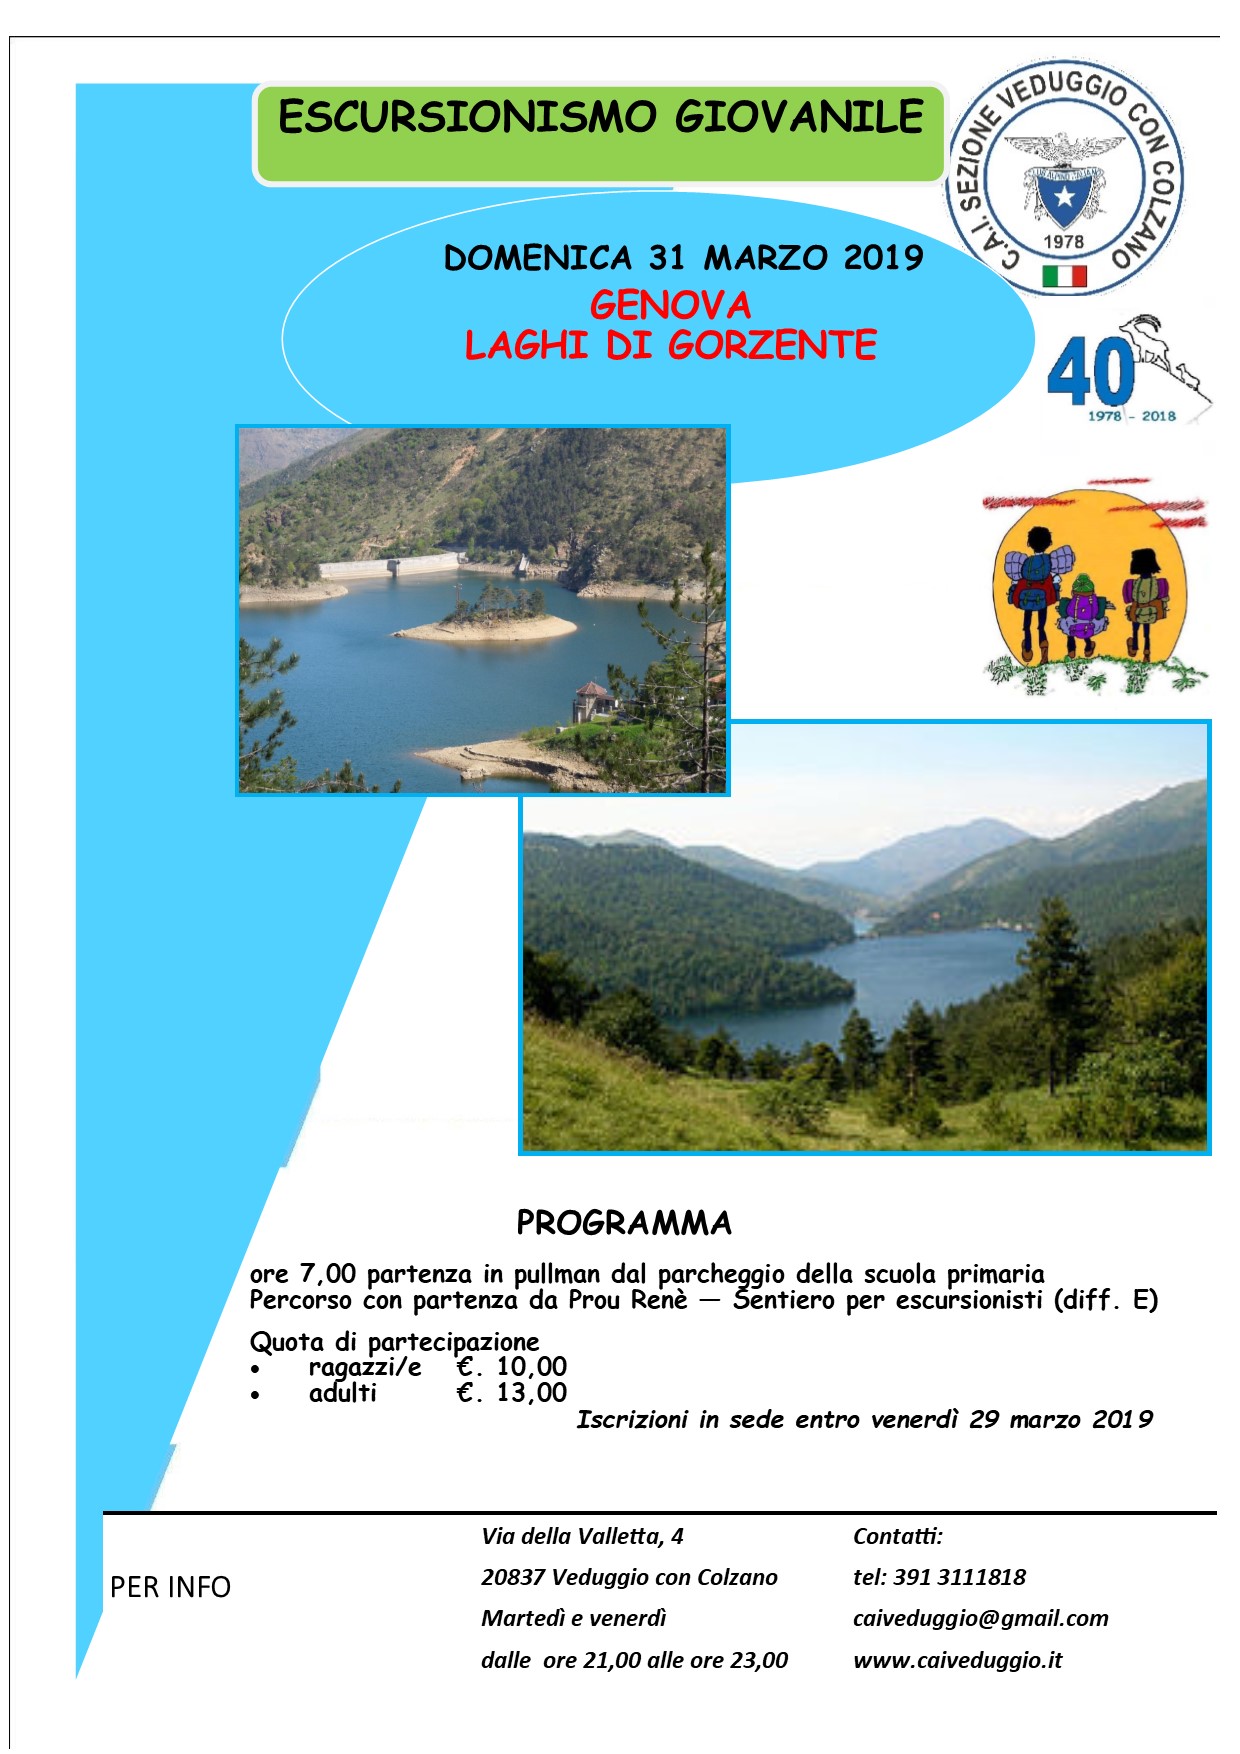 Domenica 31 marzo 2019 – Escursionismo giovanile – Genova/Laghi di Gorzente